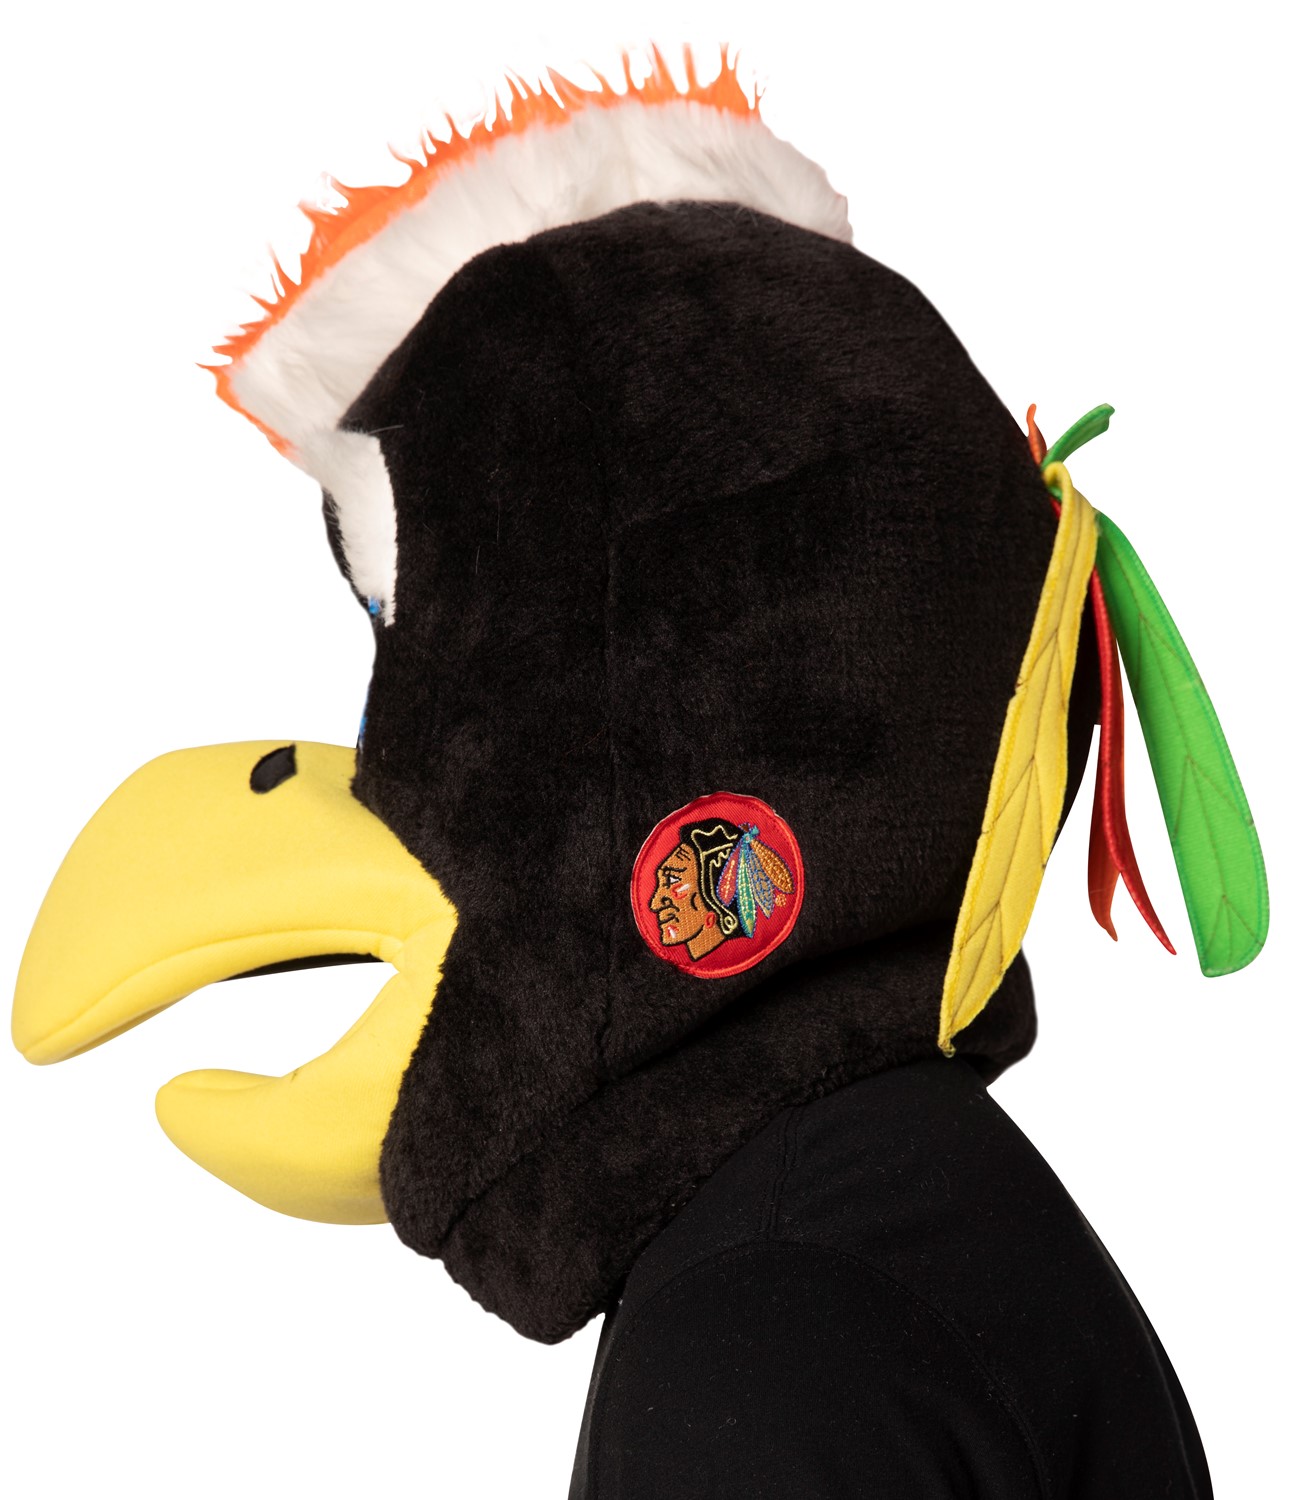  Rasta Imposta NHL Hockey Slapshot Washington Capitals Mascot  Head Sports Costume, Adult One Size : Clothing, Shoes & Jewelry